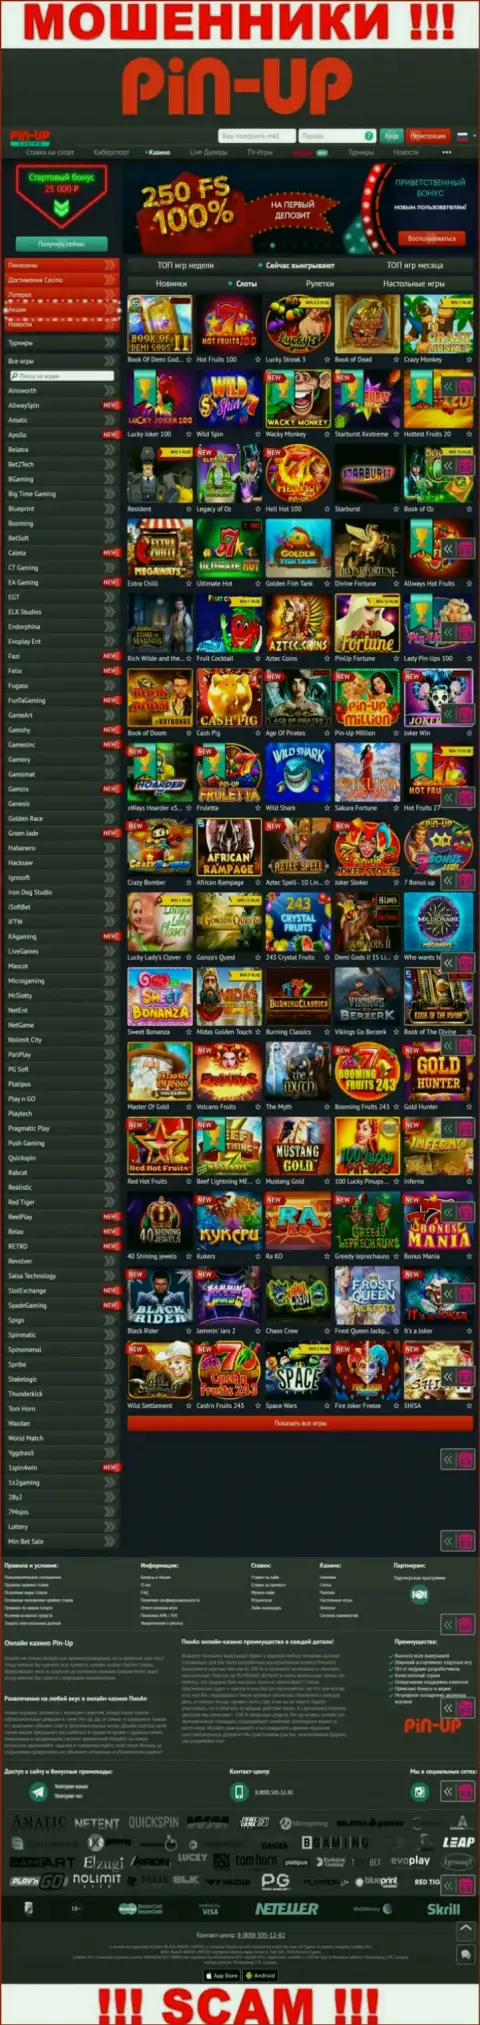 Pin-Up Casino - это официальный сервис мошенников Pin Up Casino